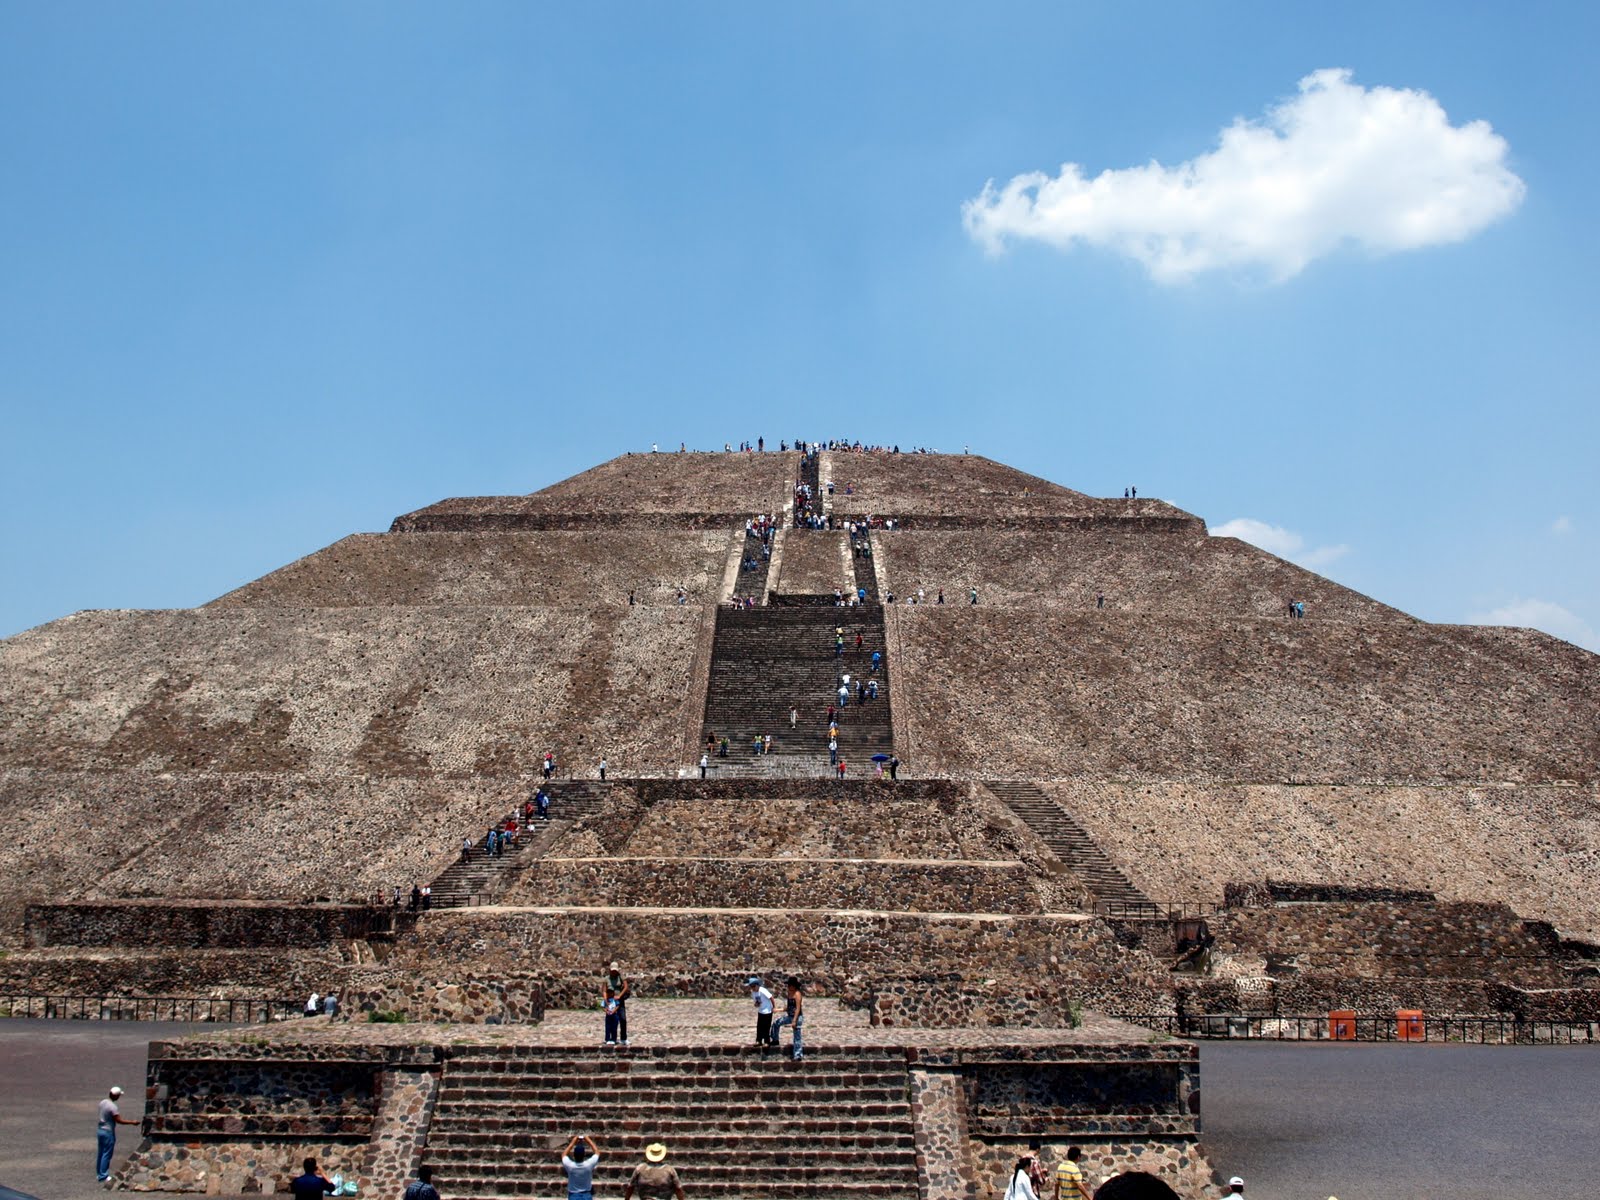 Trip notebook: Pirámide del Sol, Teotihuacán, Mexico